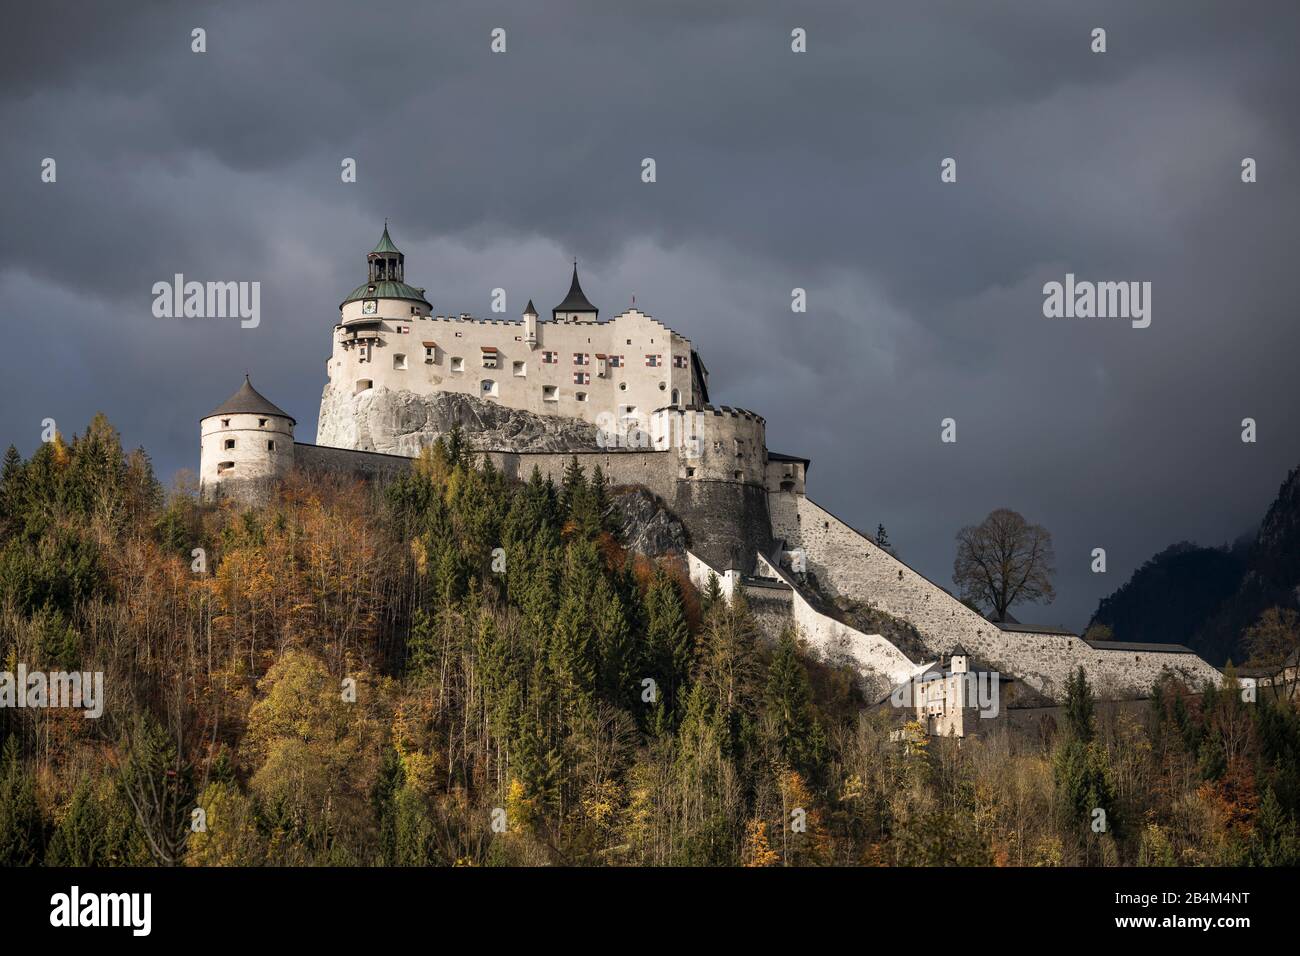 Die Festung Hohenwerfen im Salzachtal, Werfen, Pongau, Land Salzburg, Österreich, Oktober 2019 Stock Photo